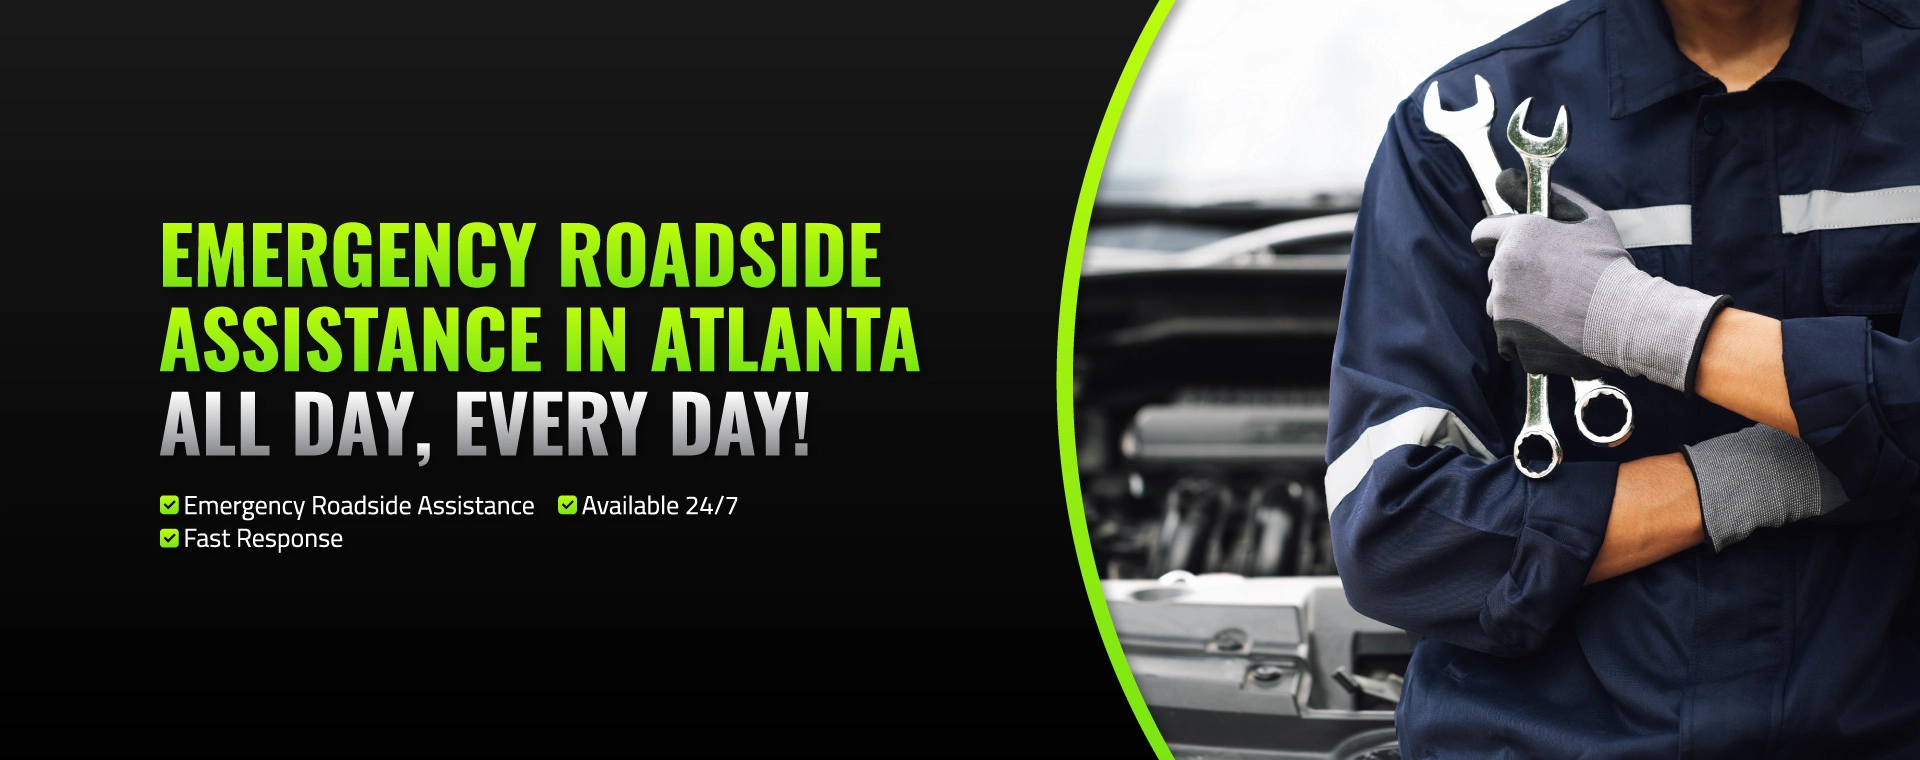 Emergency Roadside Assistance in Atlanta – All Day, Every Day! Emergency Roadside Assistance, Available 24/7, Fast Response